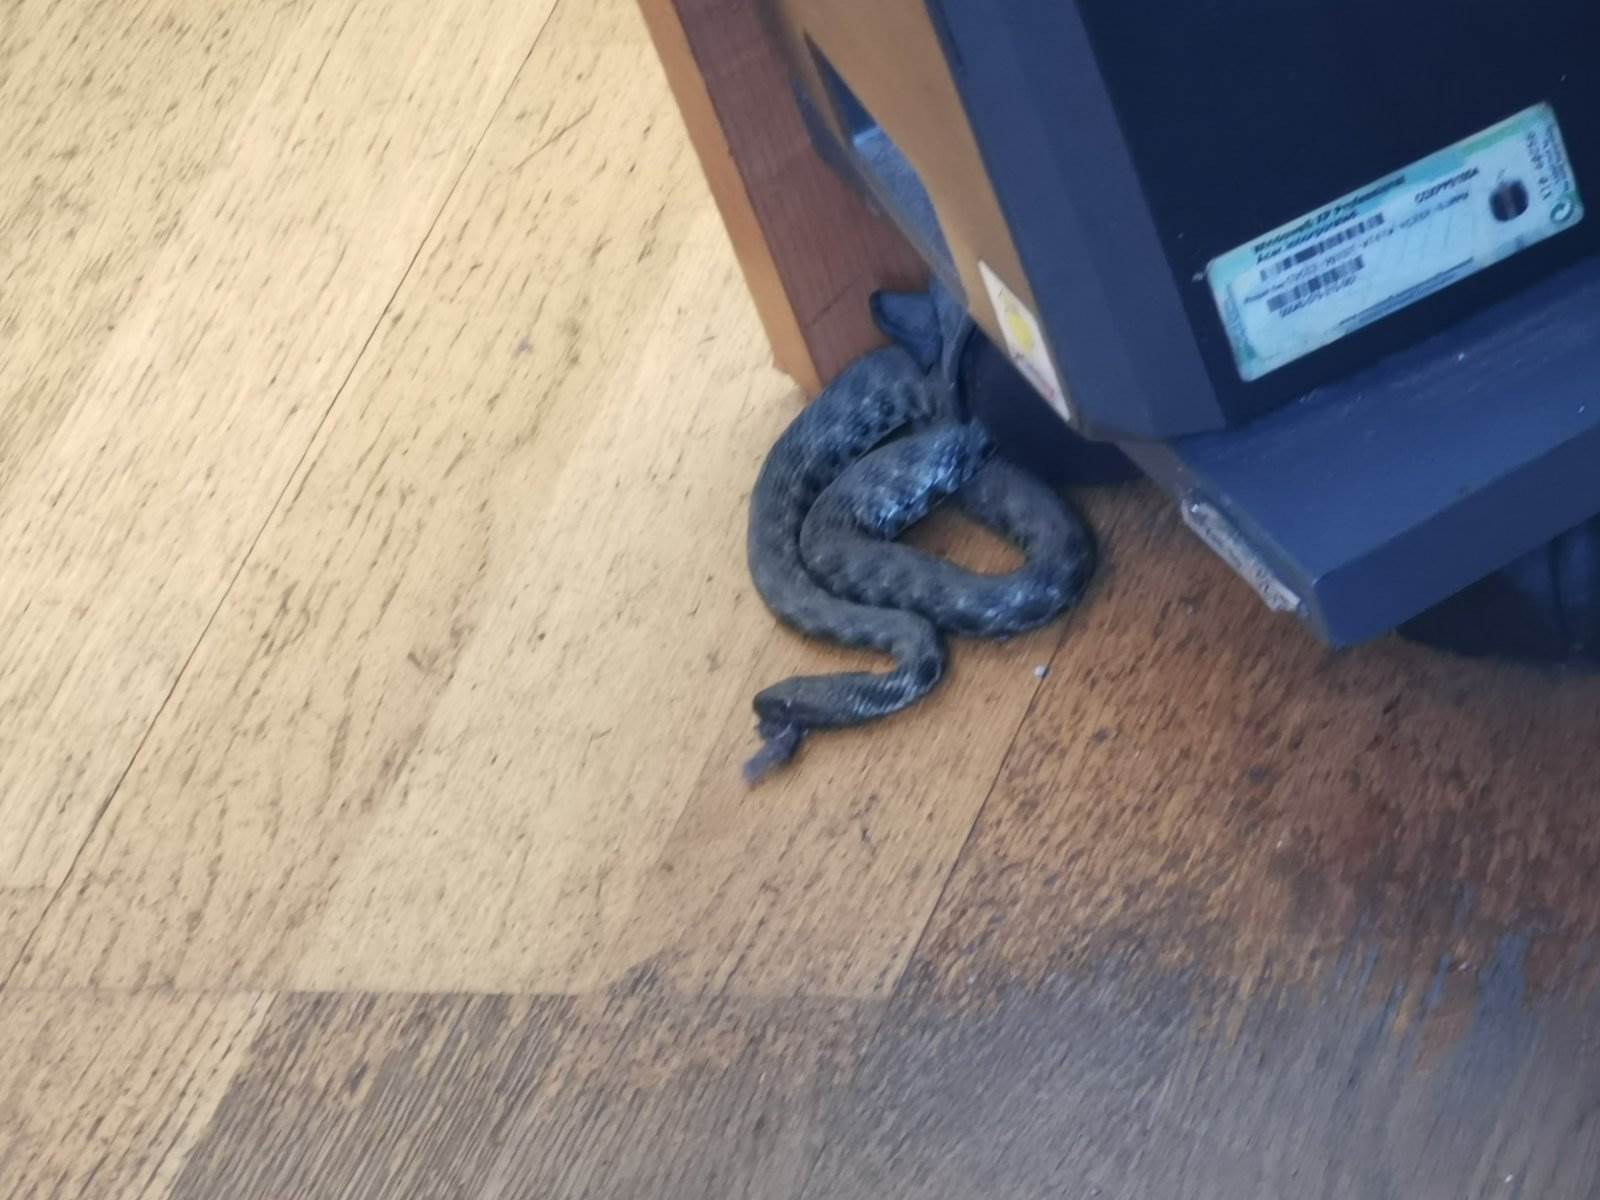  U prostorijama UIO BiH u Banjaluci pronađena zmija 